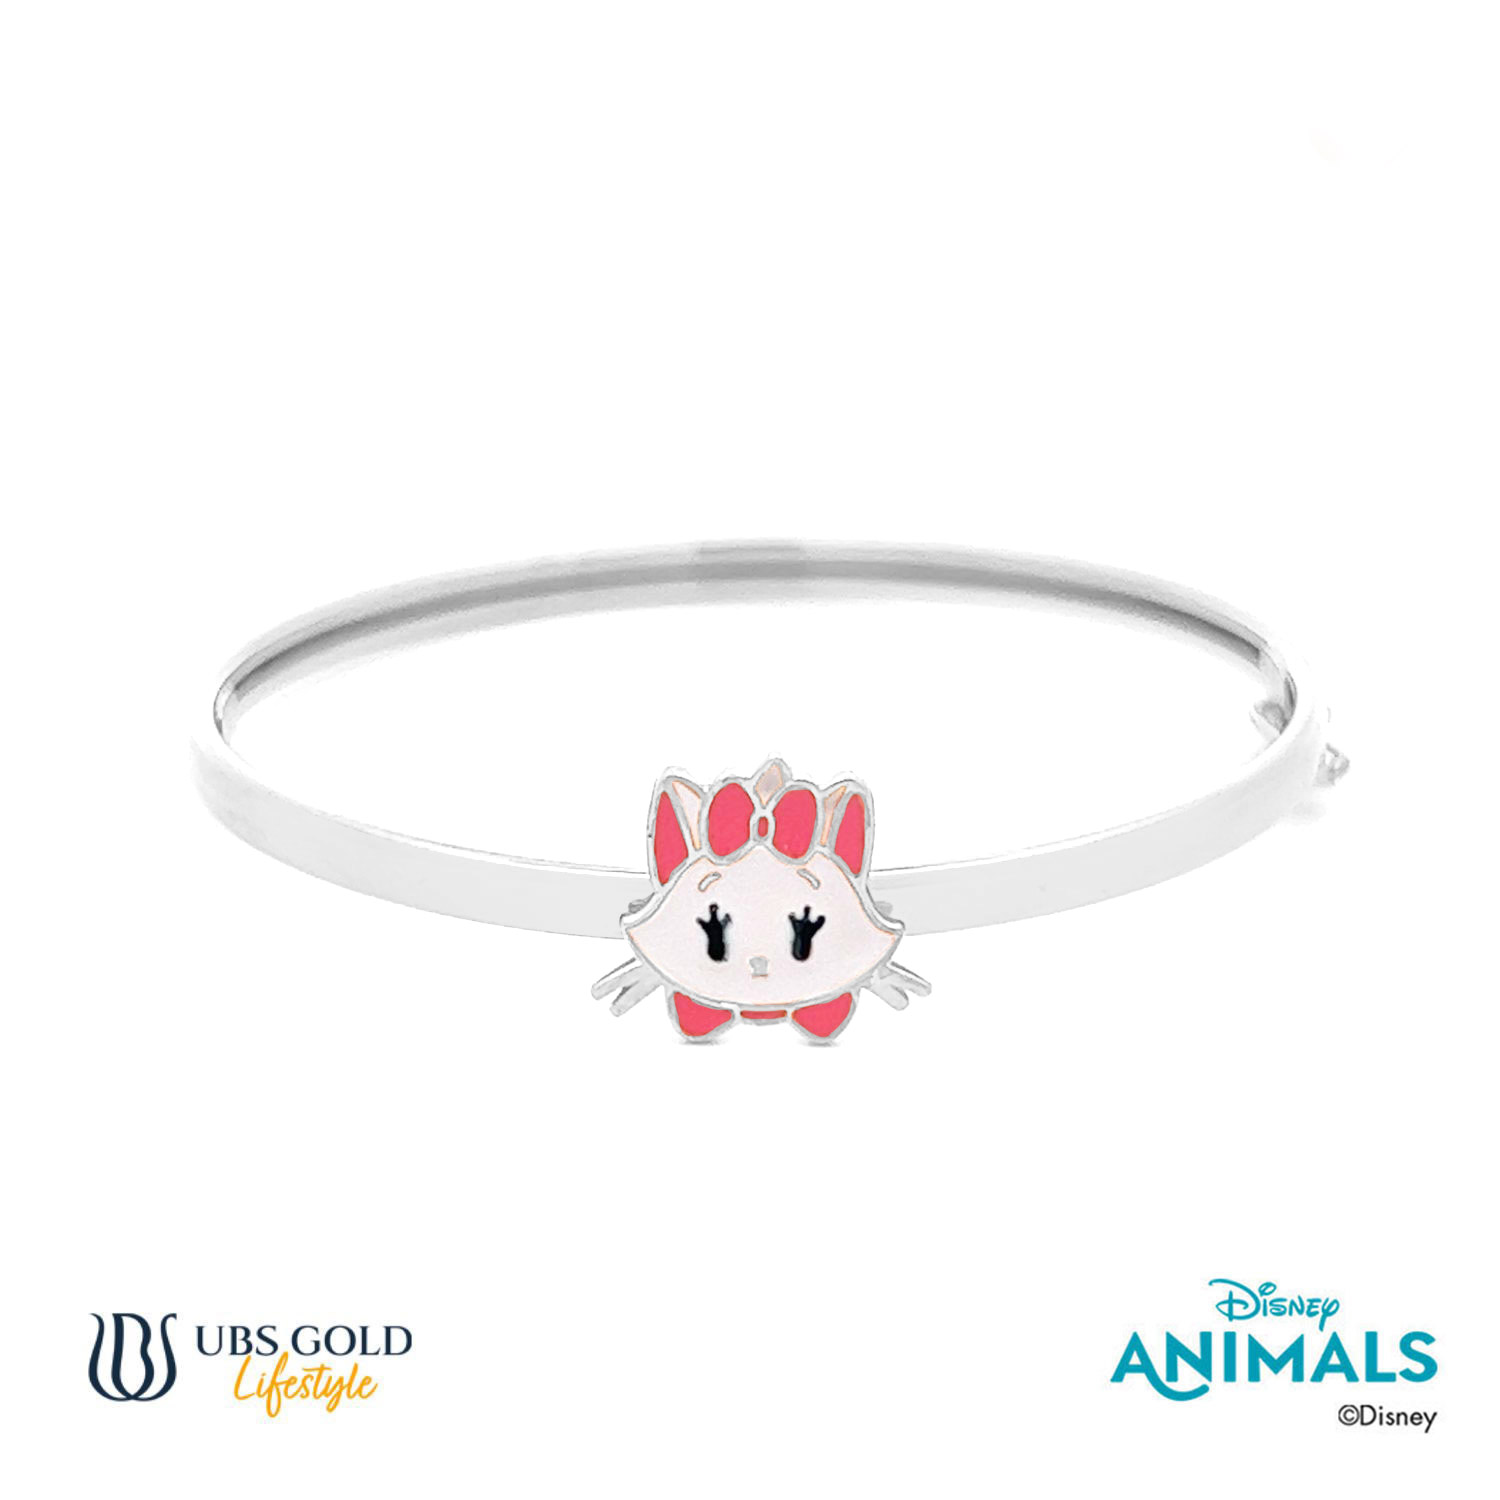 UBS Gold Gelang Emas Bayi Disney Animals - Vgy0121T - 17K